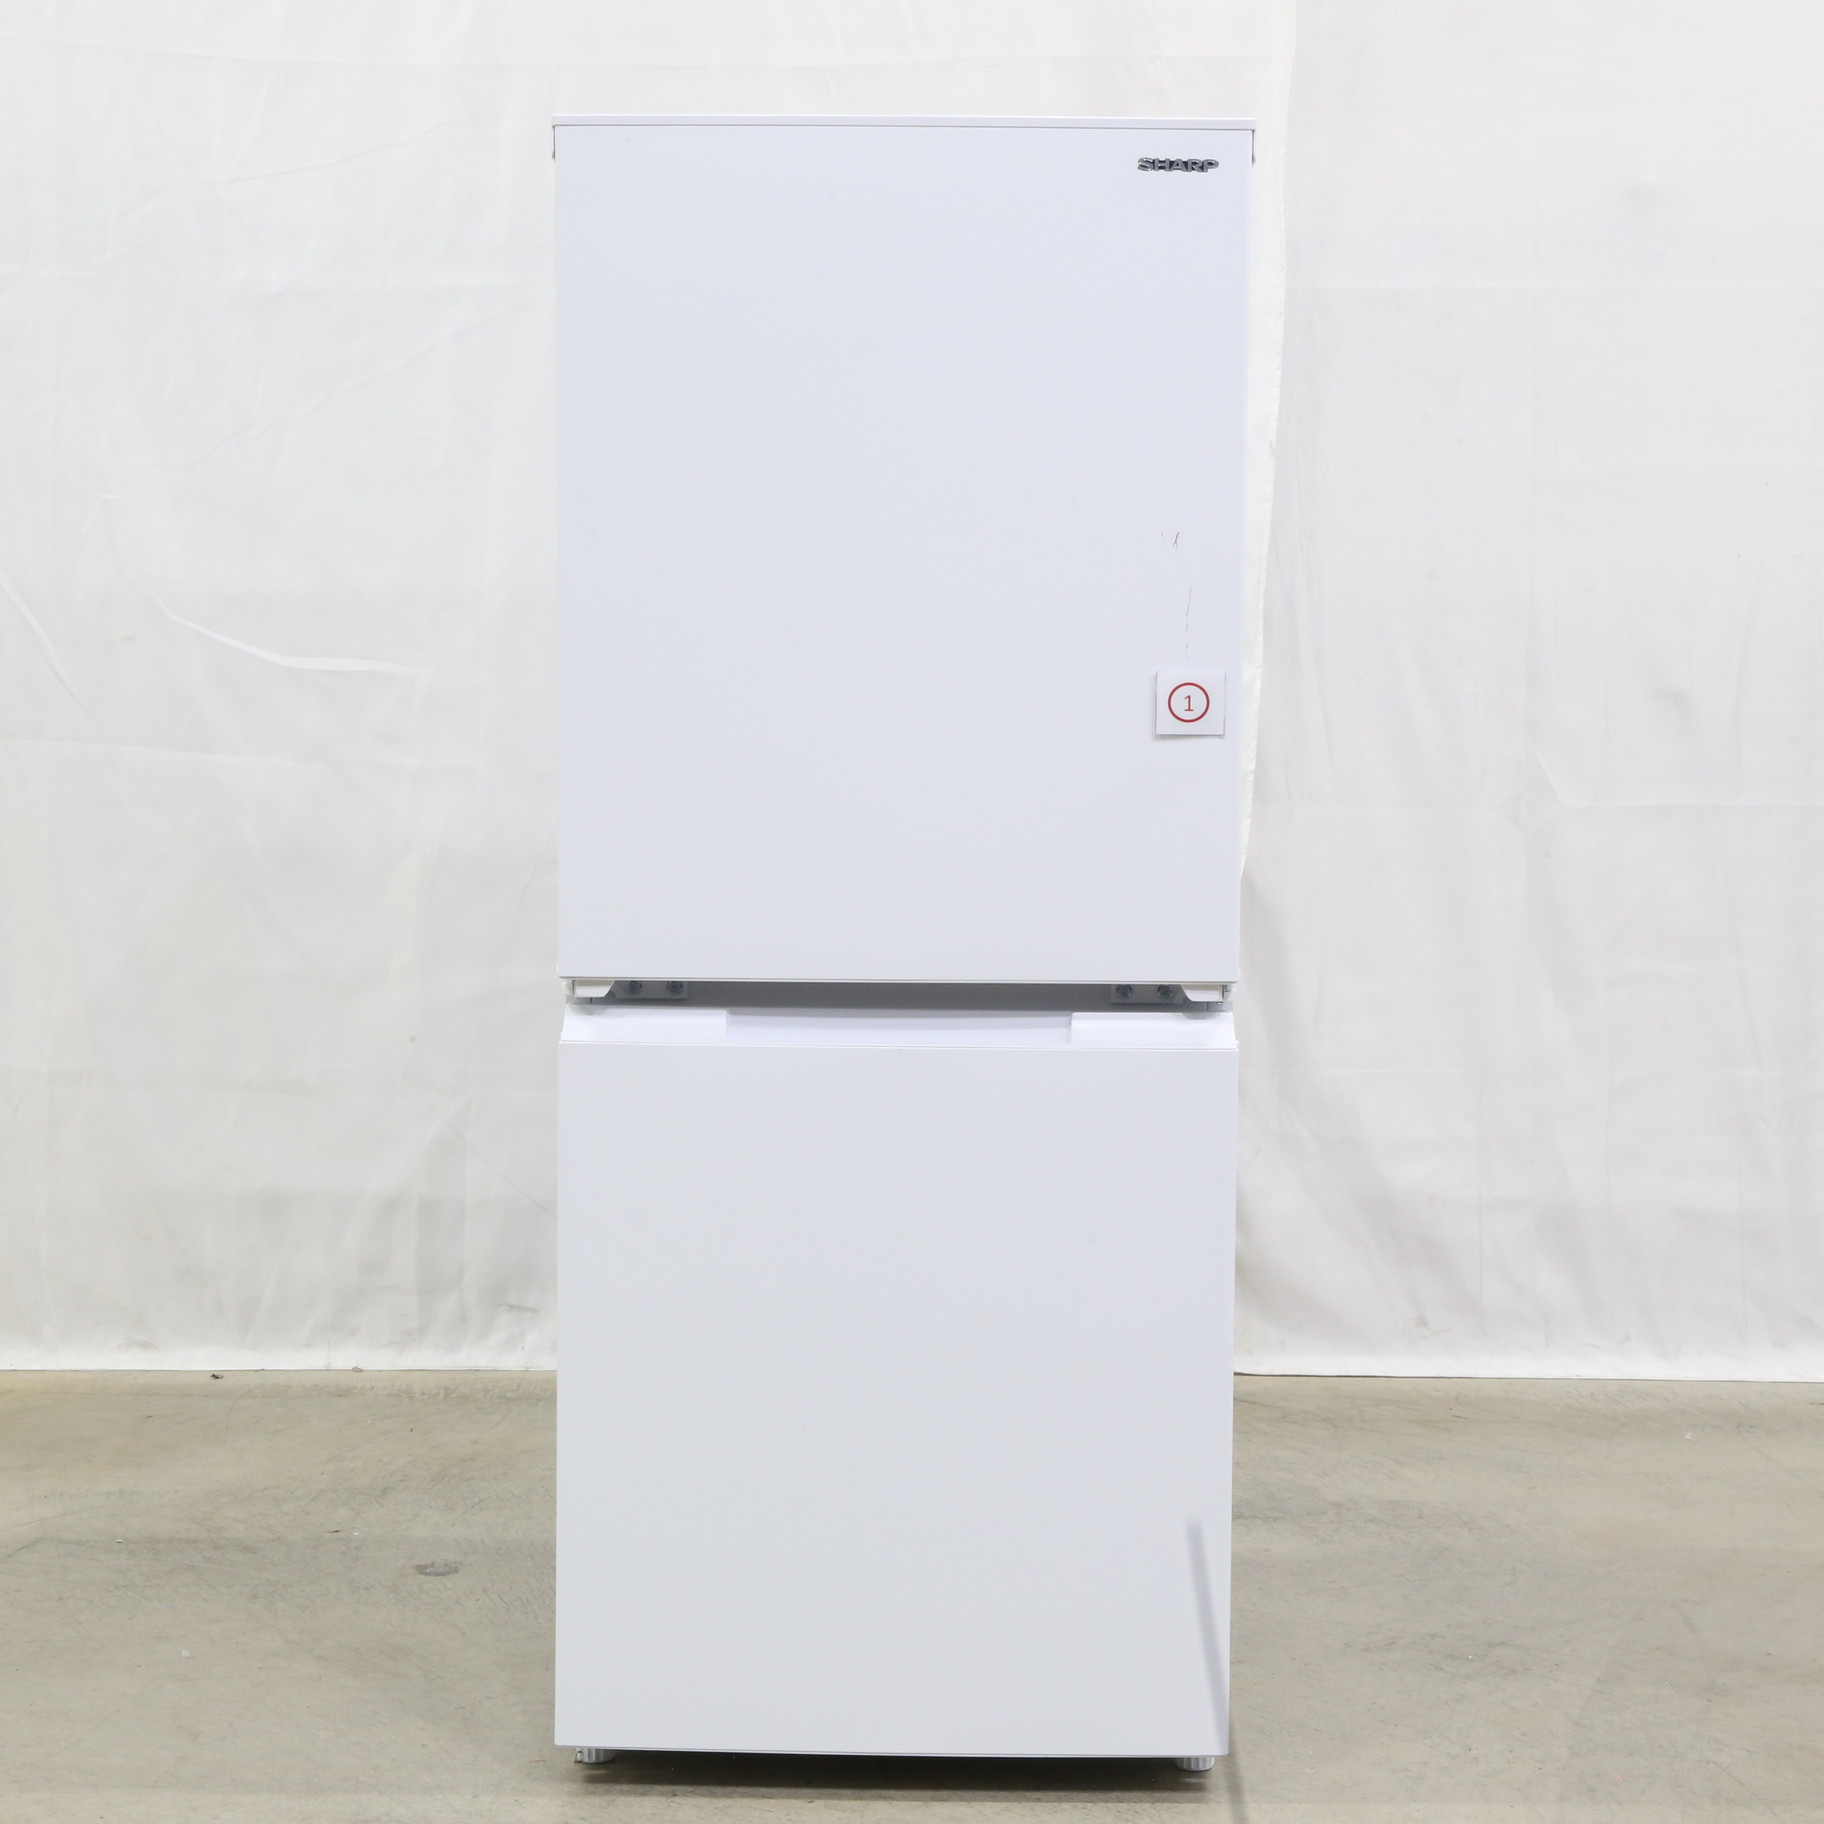 【中古】〔展示品〕 セール対象品 冷蔵庫 ホワイト系 SJ-D15J-W